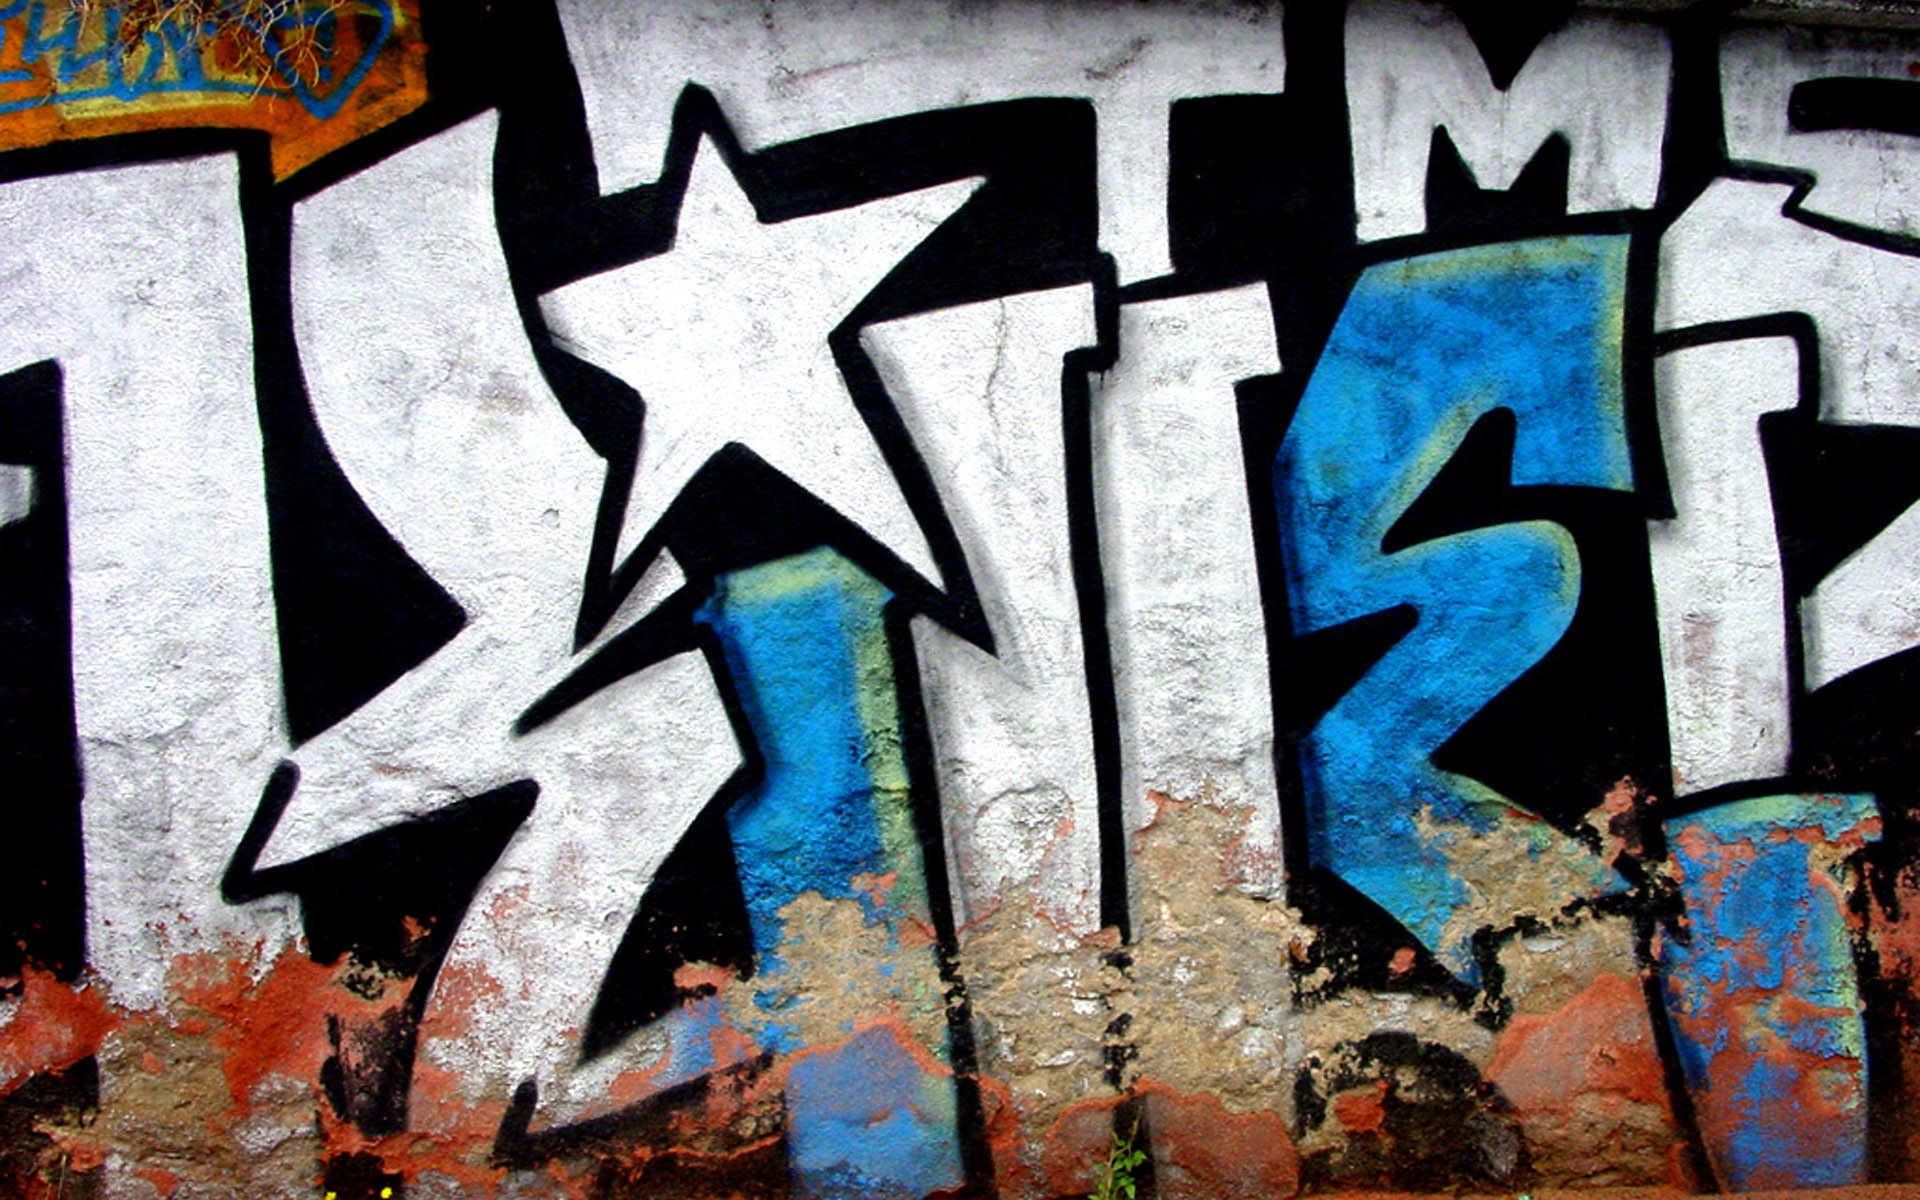 328 Fondos de pantalla de Graffiti HD | Imágenes de fondo